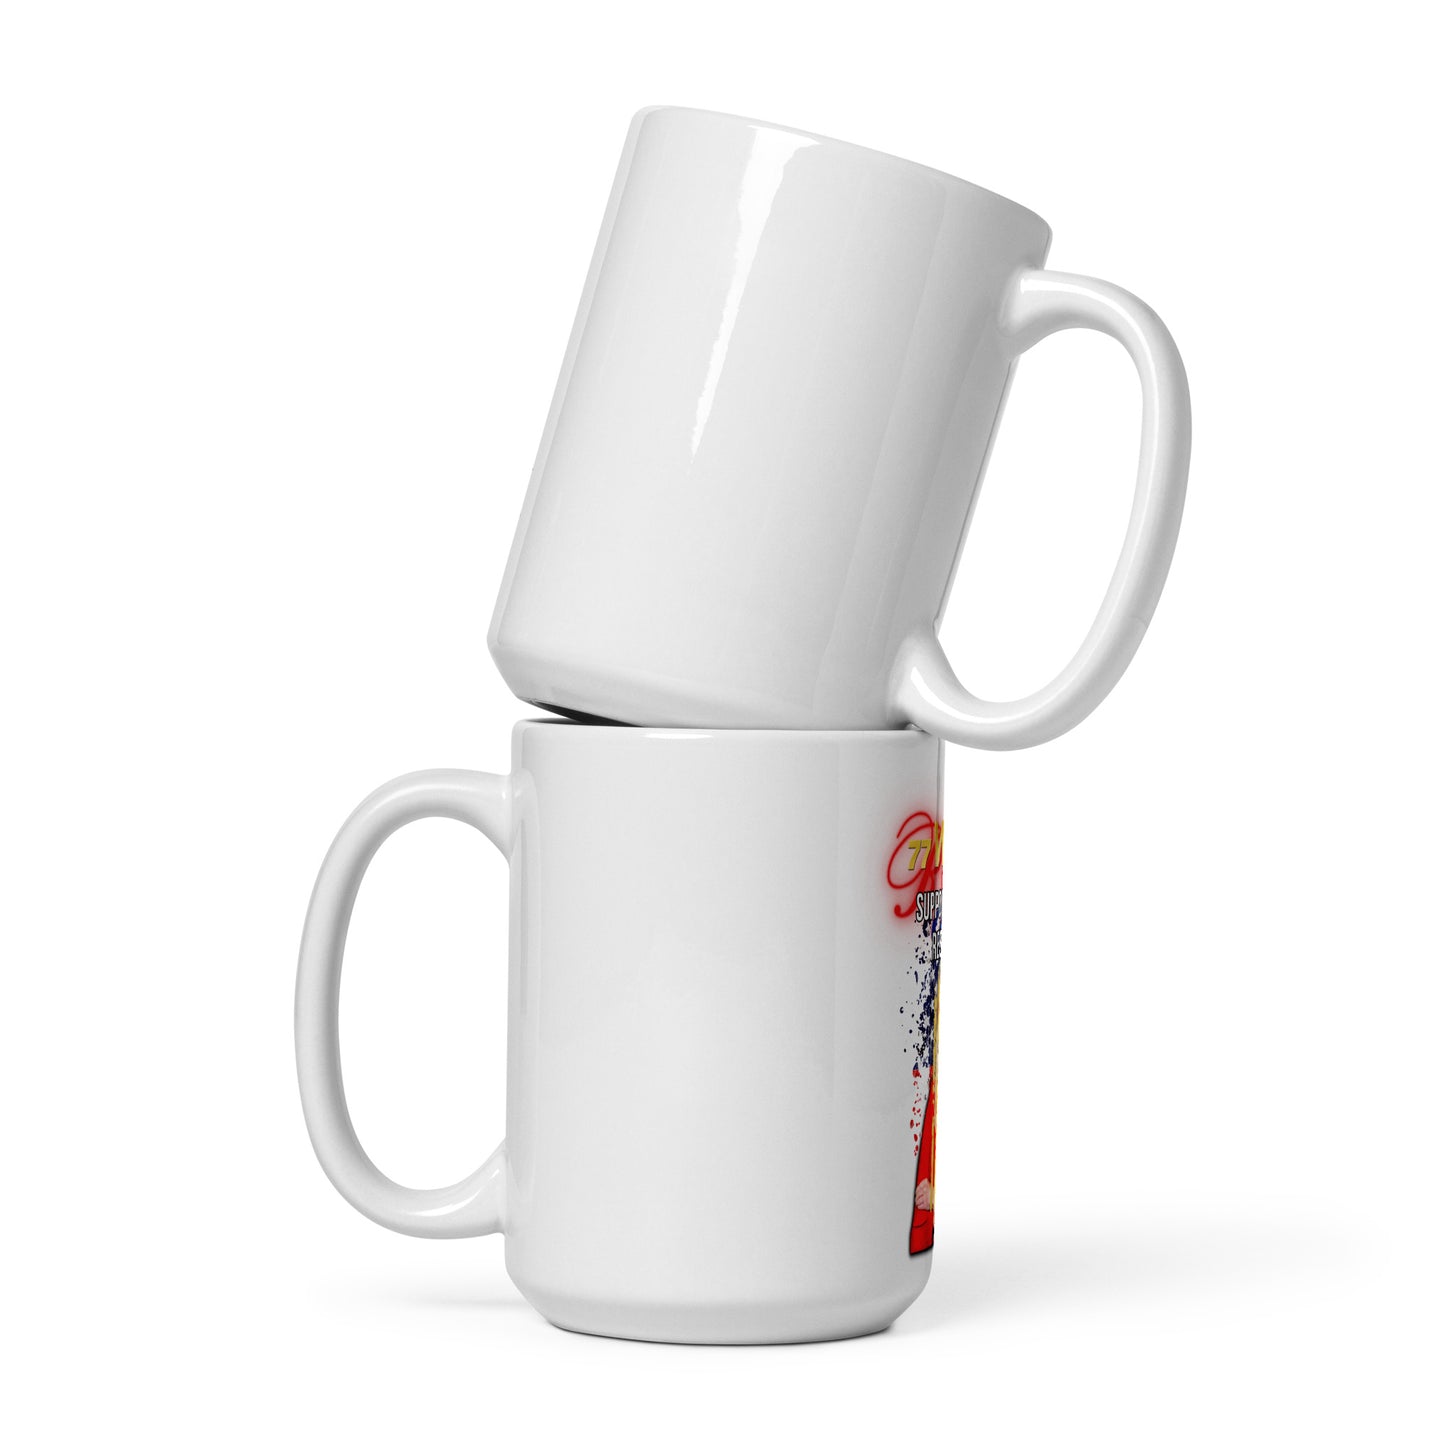 Rita White glossy mug